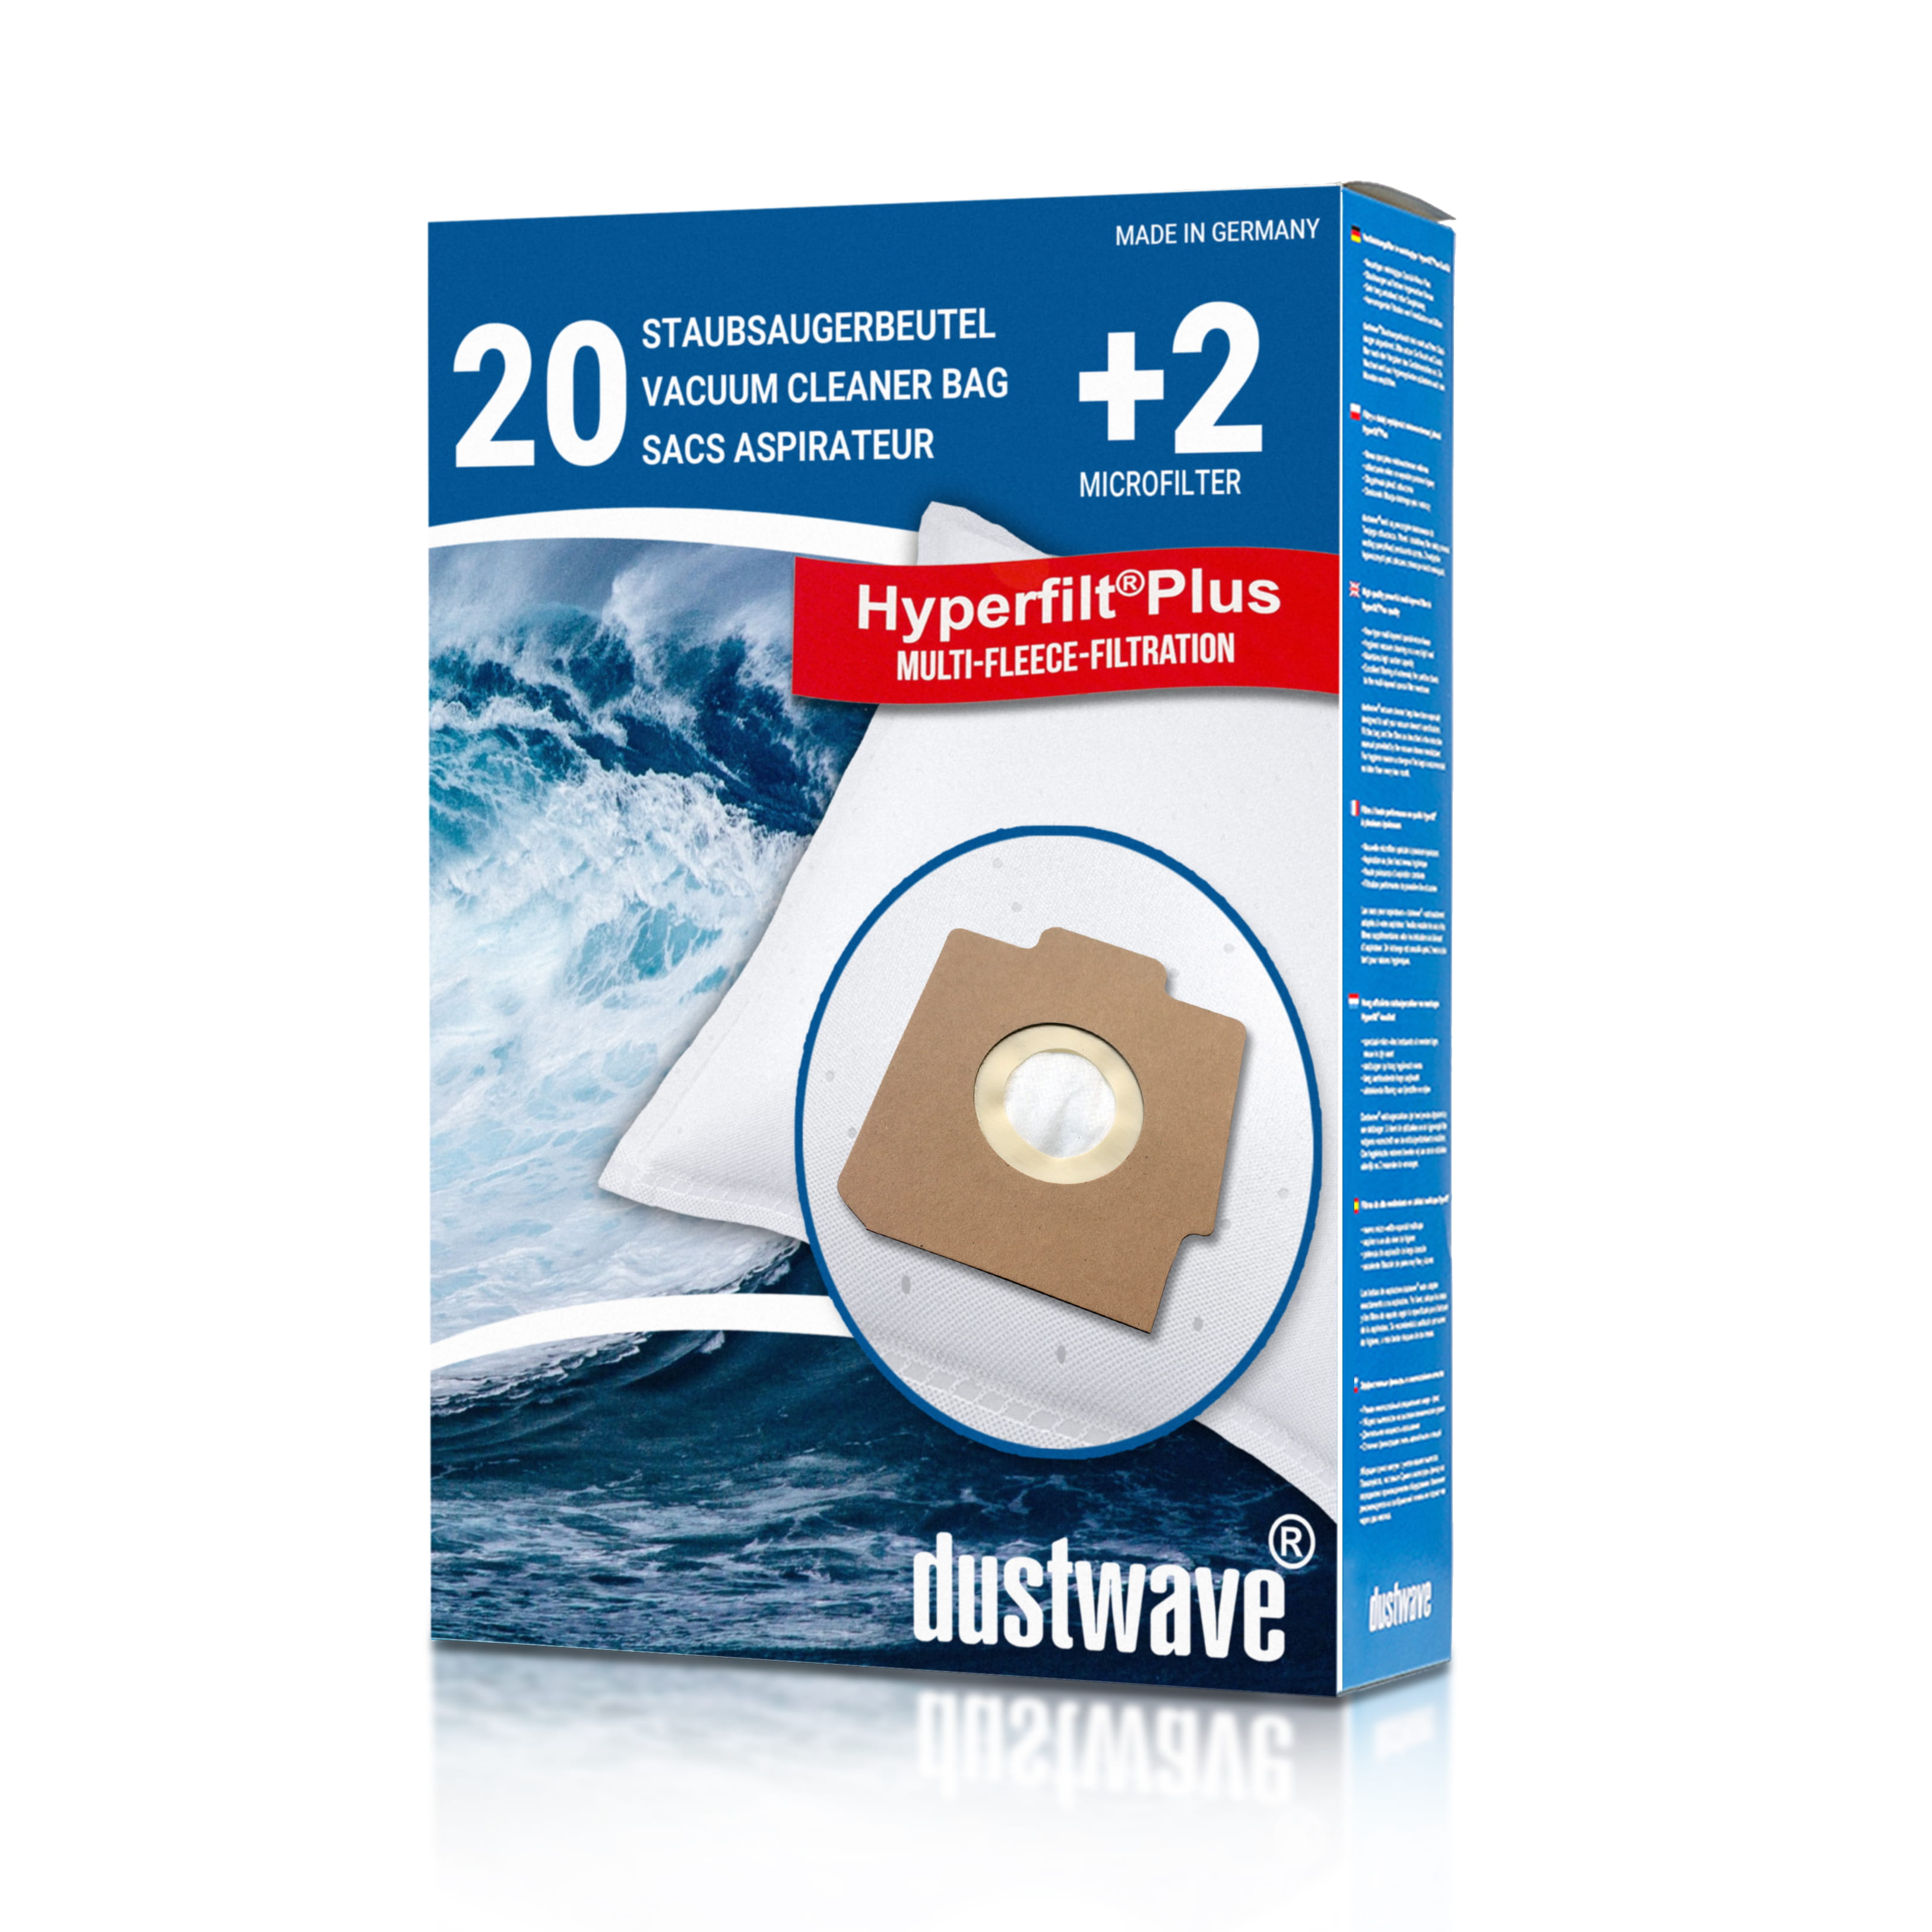 Dustwave® 20 Staubsaugerbeutel für Hoover S3X22 / TRS3X22 - hocheffizient, mehrlagiges Mikrovlies mit Hygieneverschluss - Made in Germany